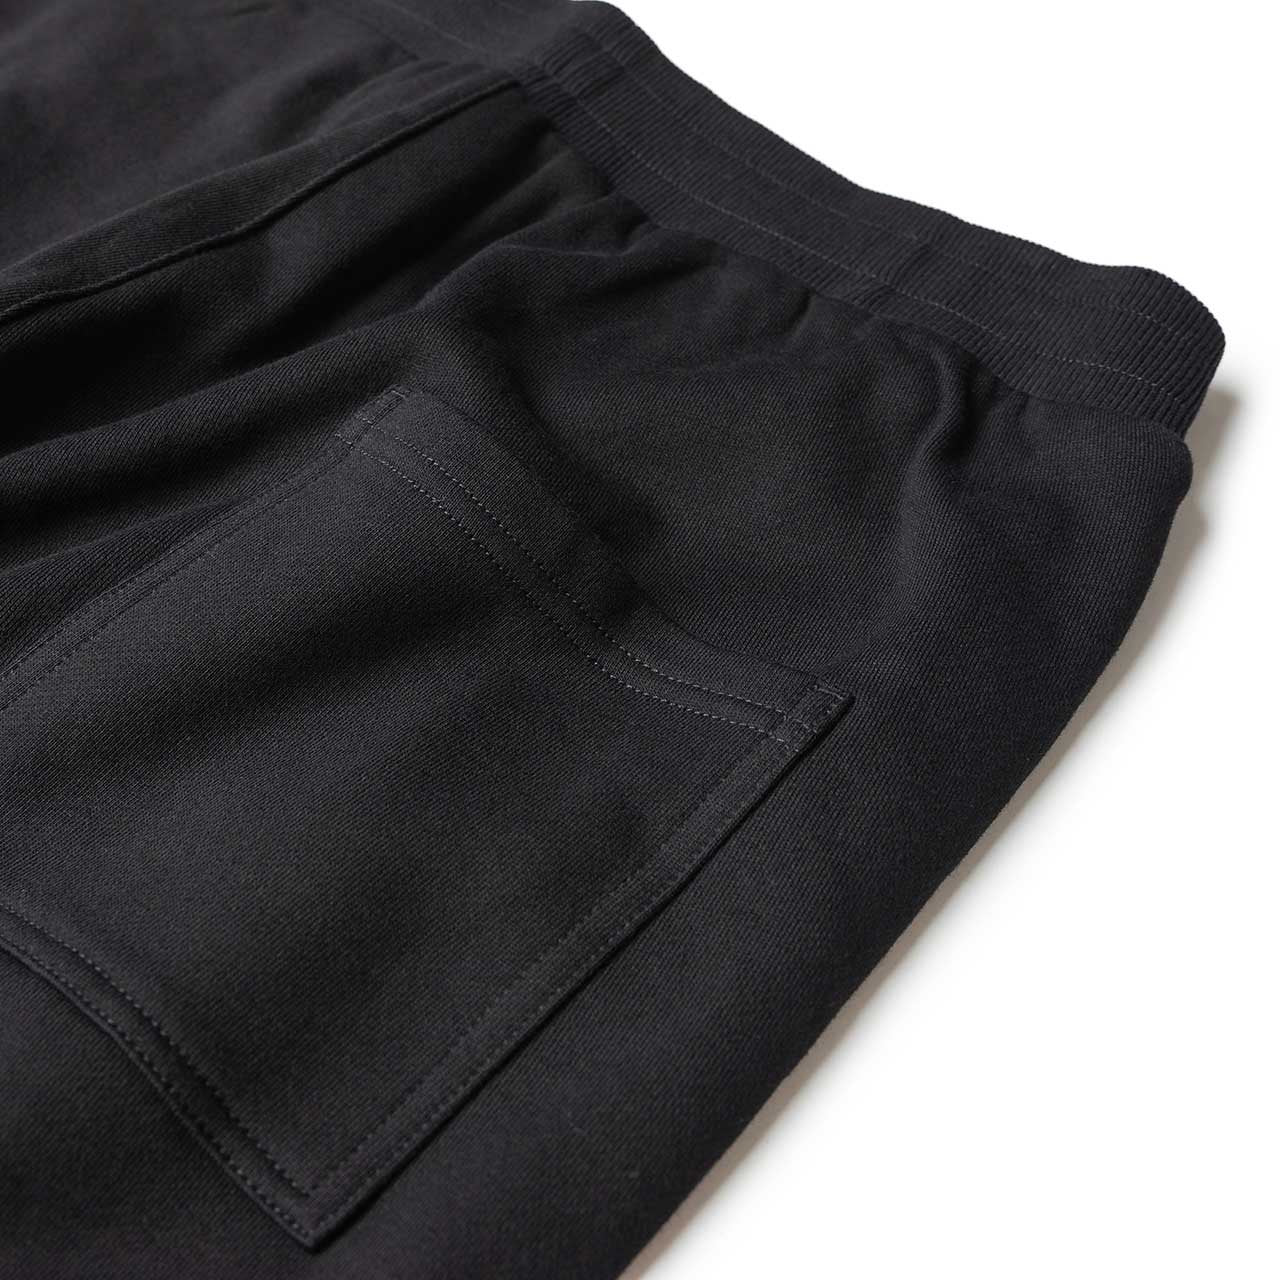 perks and mini b.t.c. jogger sweat pants (black) - 8382-b - a.plus - Image - 7